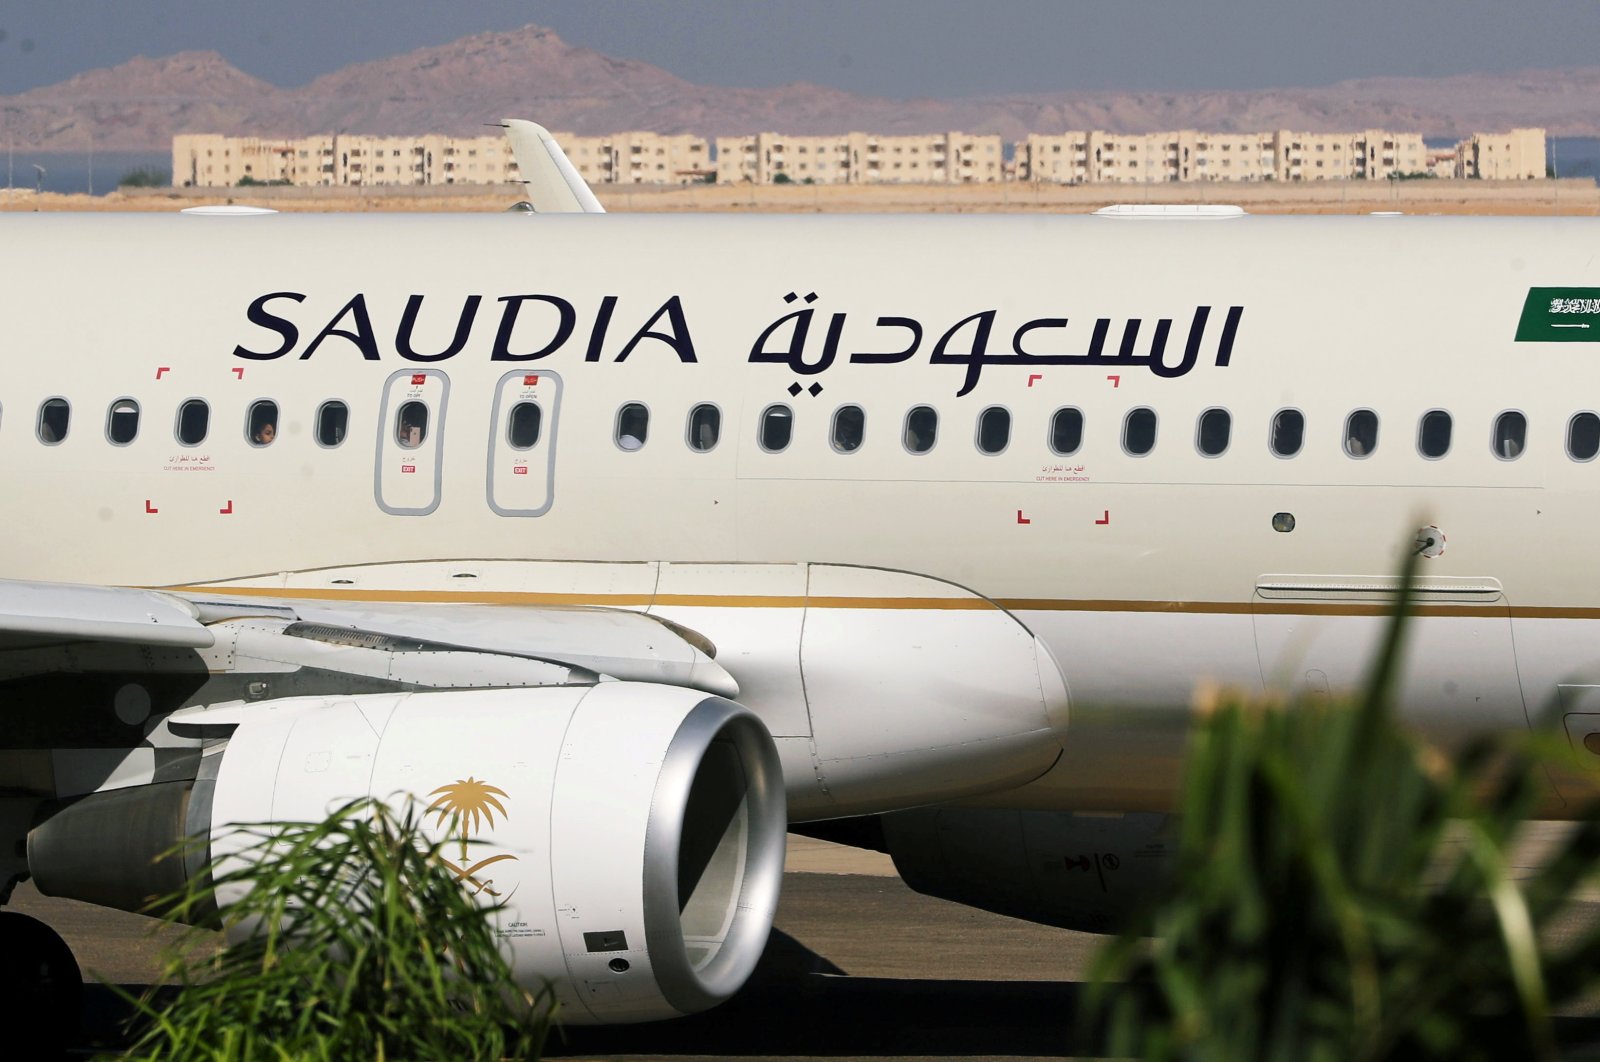 Saudia mendiskusikan jet berbadan lebar dengan Airbus, Boeing: CEO